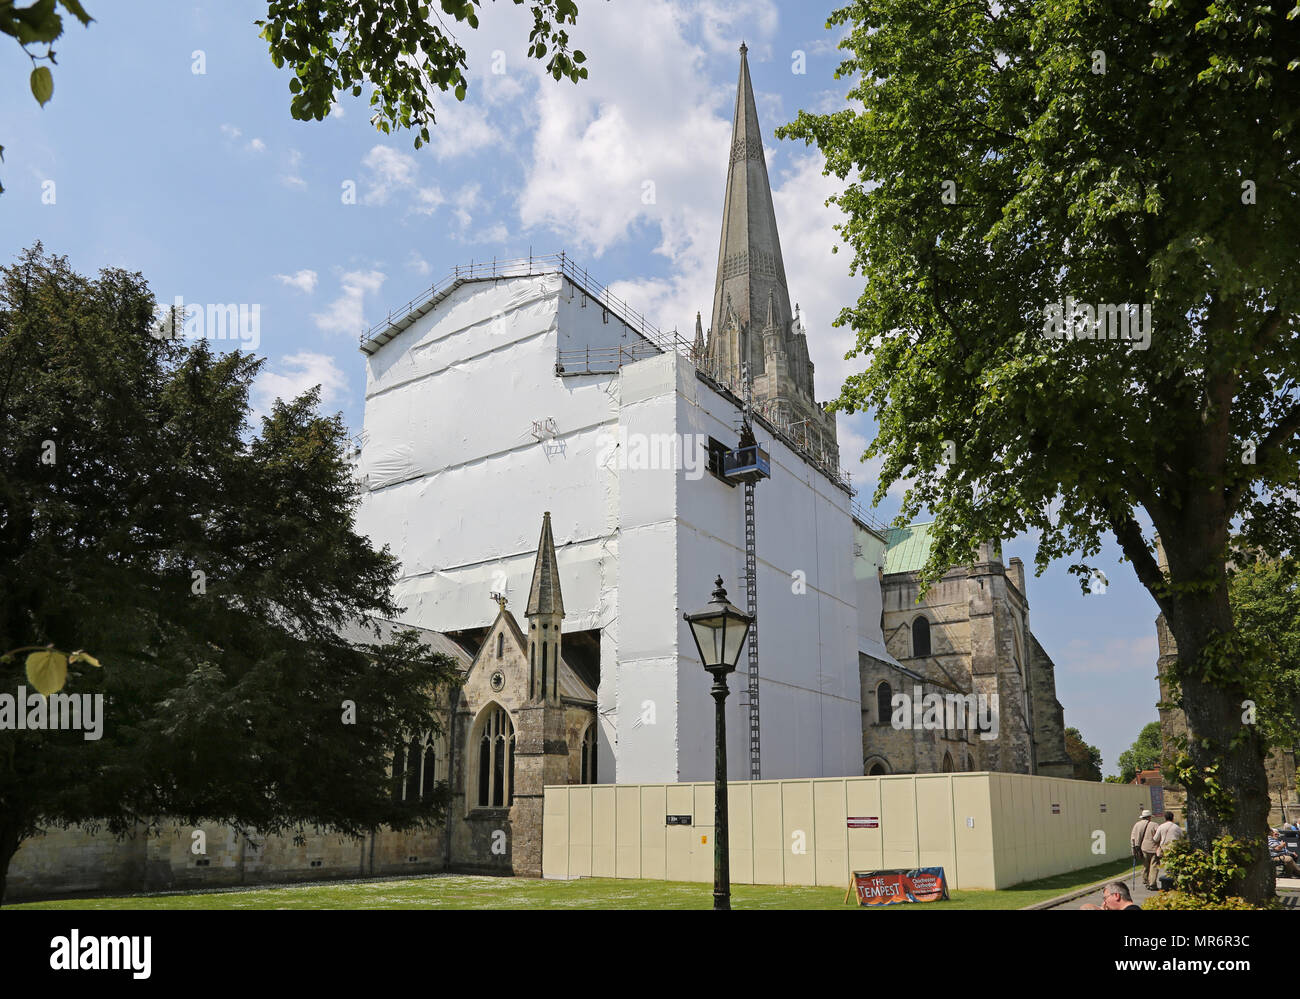 Ponteggio circonda il coro a Cattedrale di Chichester, West Sussex. La struttura offre accesso e protezione dalle intemperie per grandi riparazioni del tetto. Foto Stock